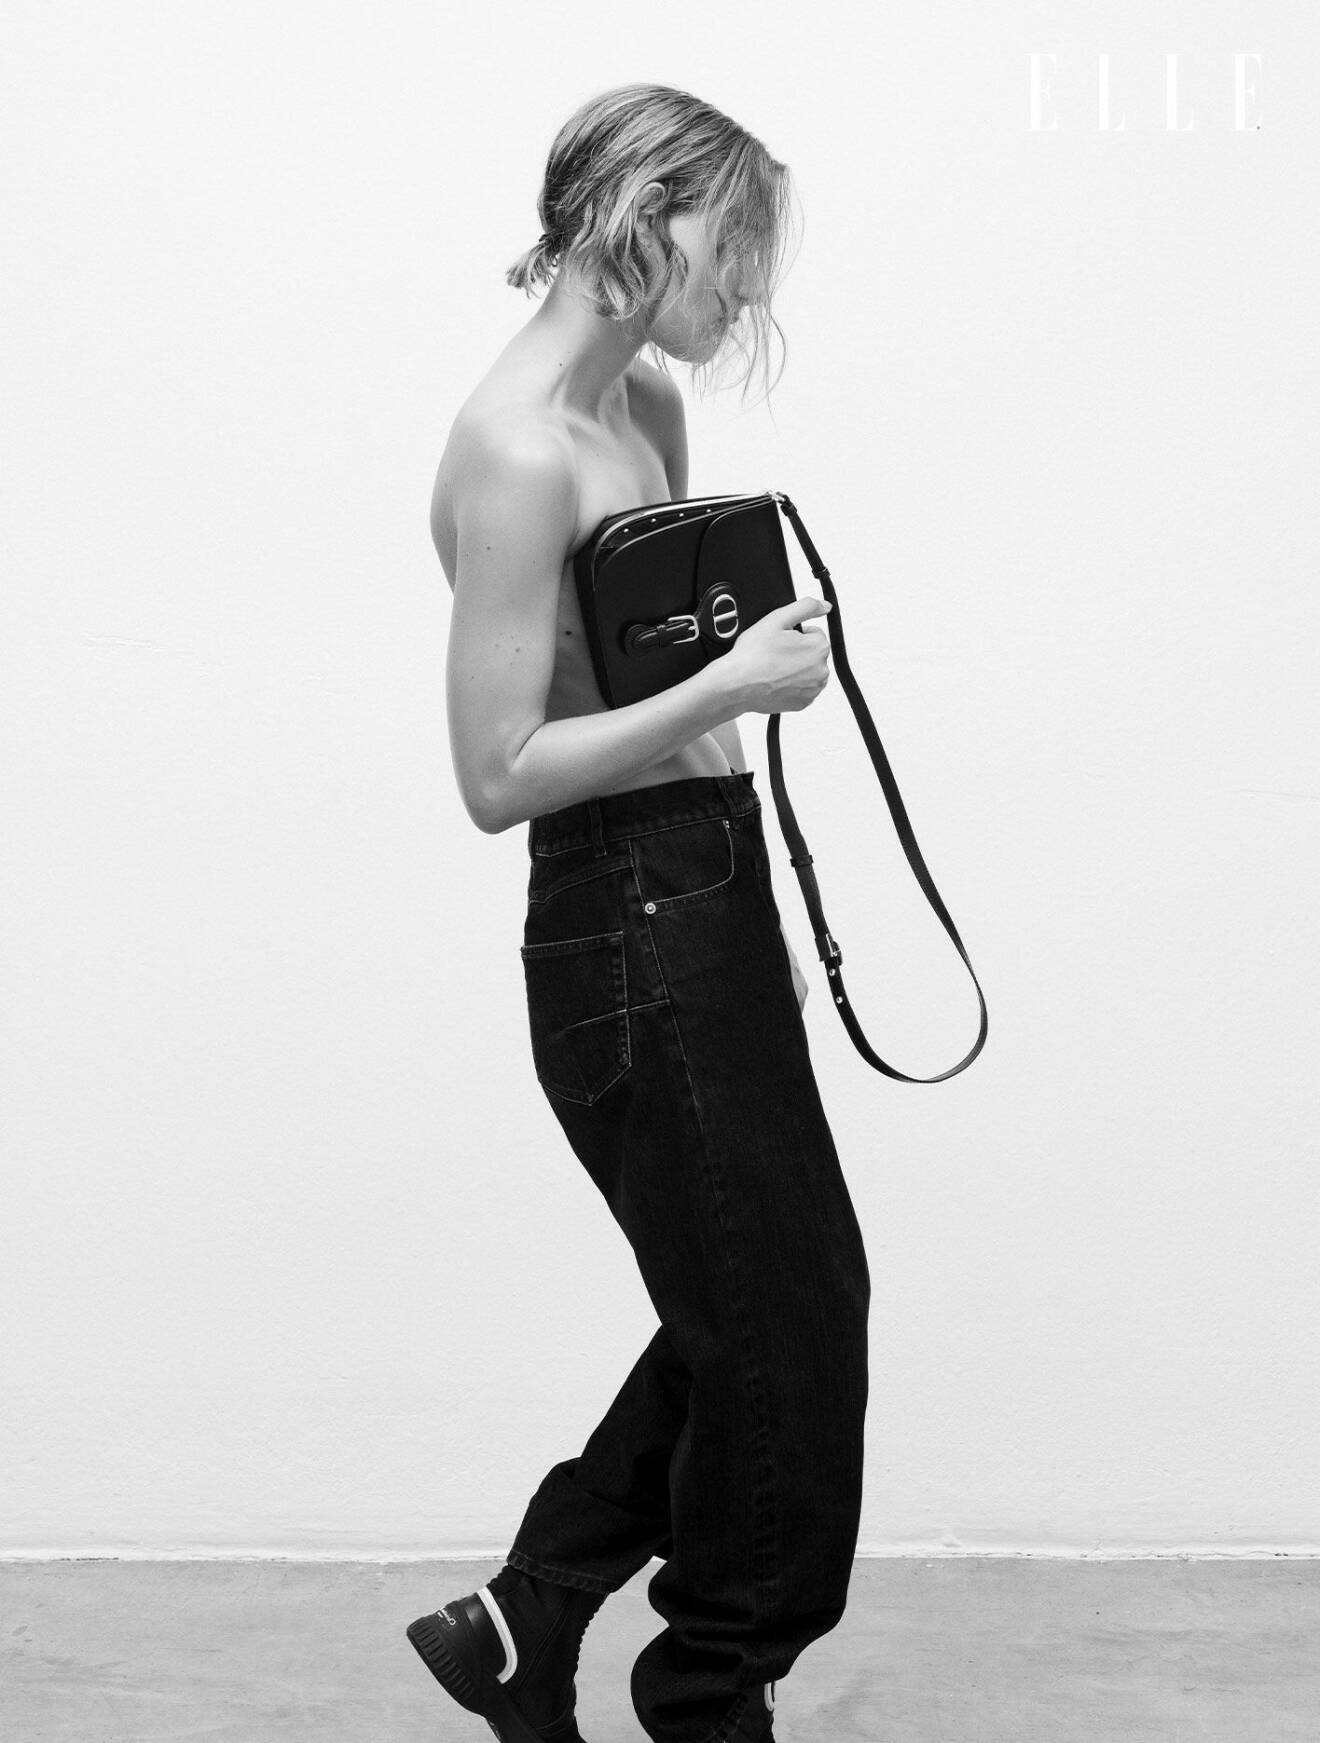 Fotomodellen har på sig svarta jeans och en bär en svart handväska, båda från Dior.